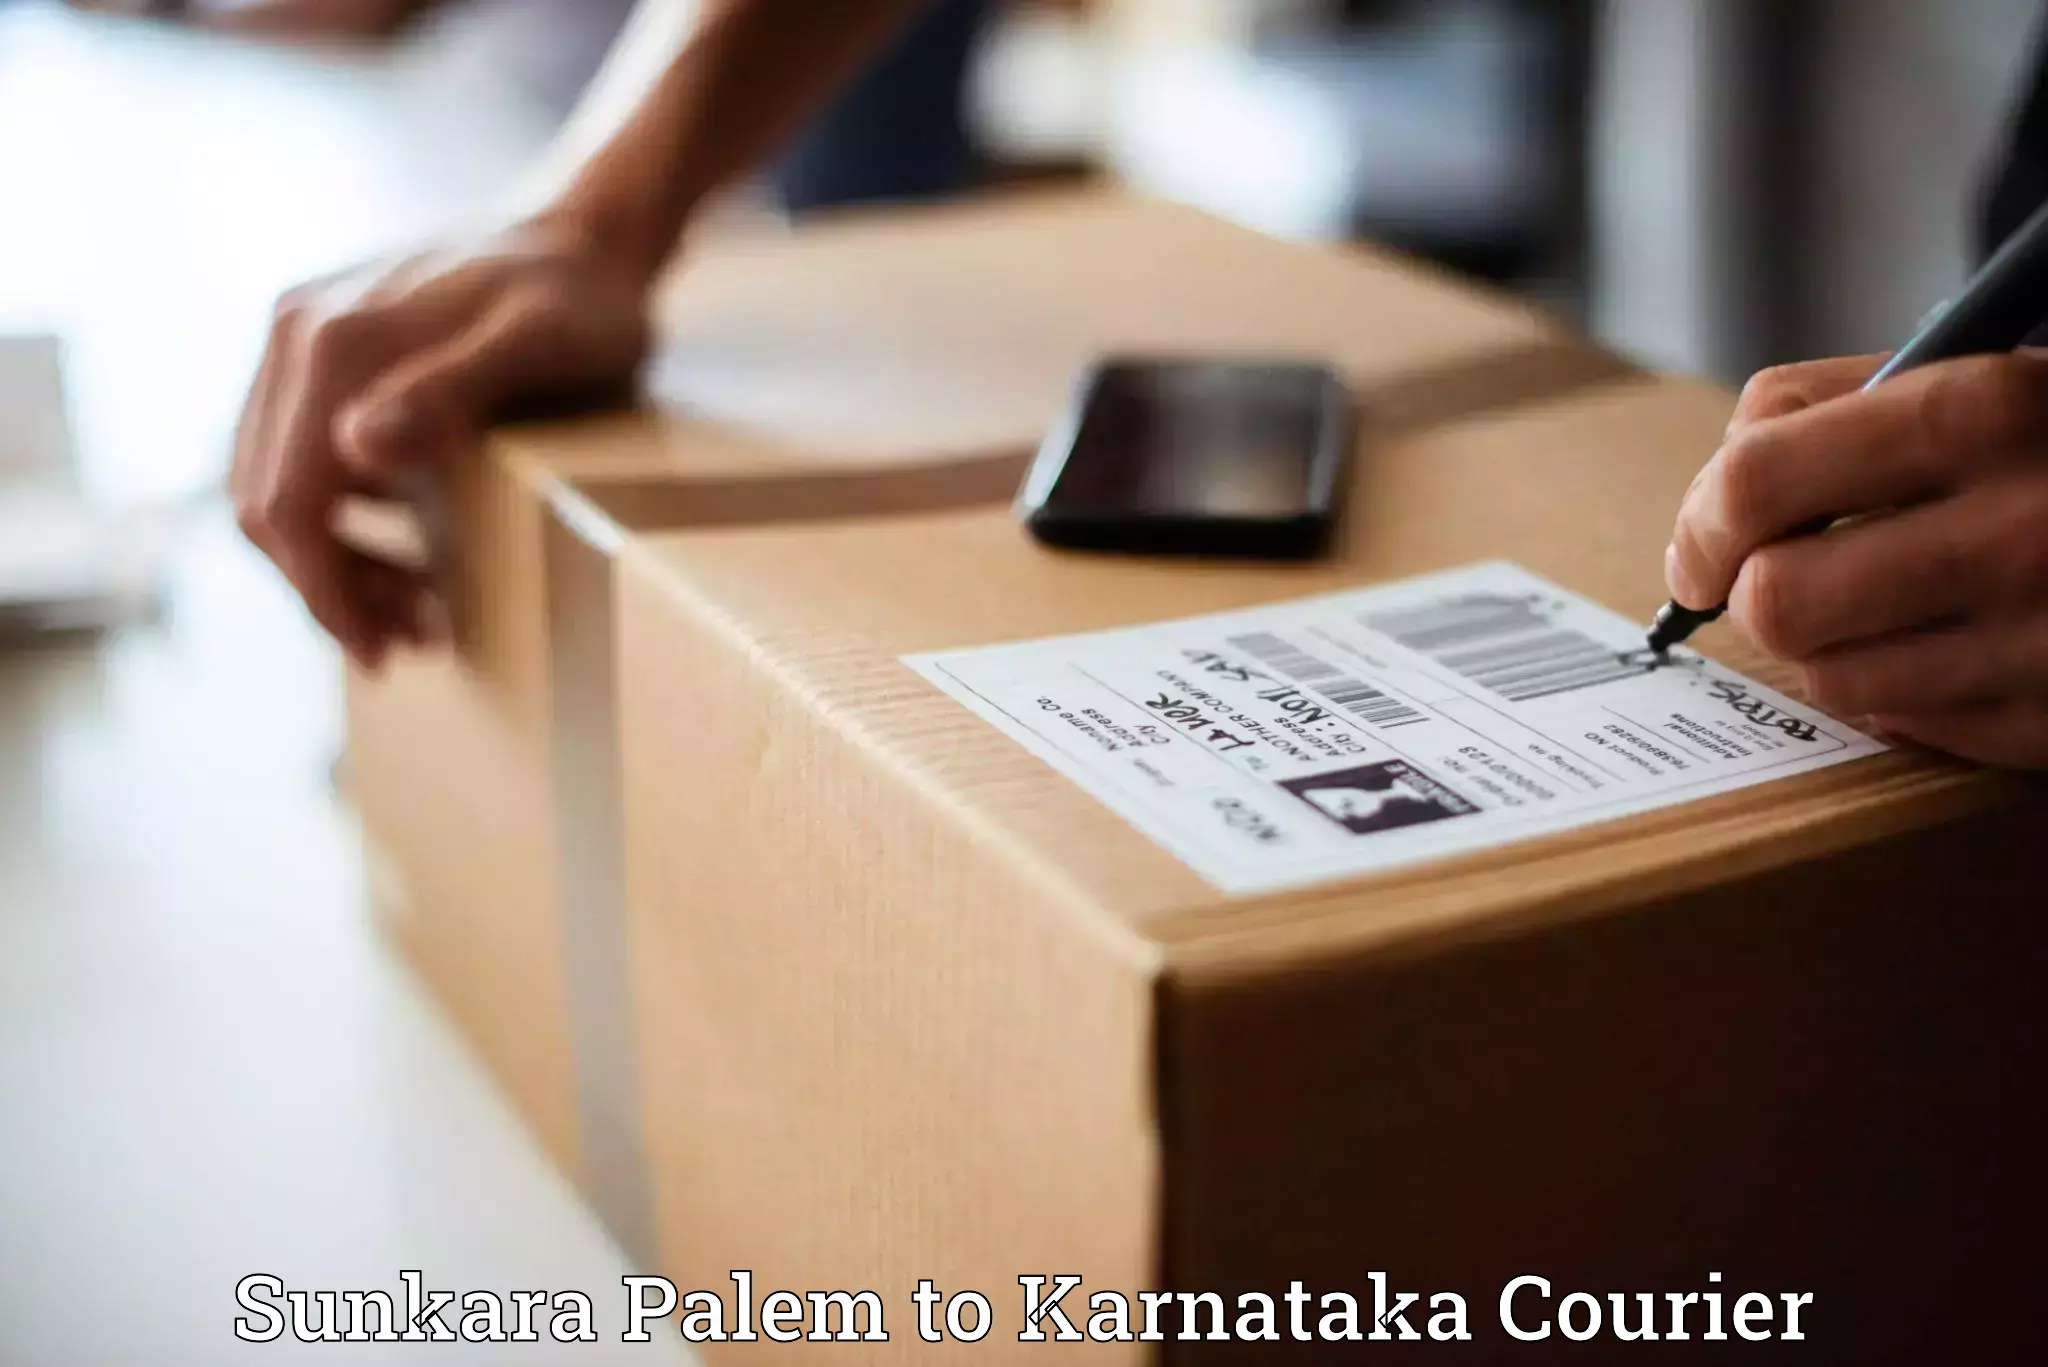 Multi-national courier services Sunkara Palem to Khanapur Karnataka